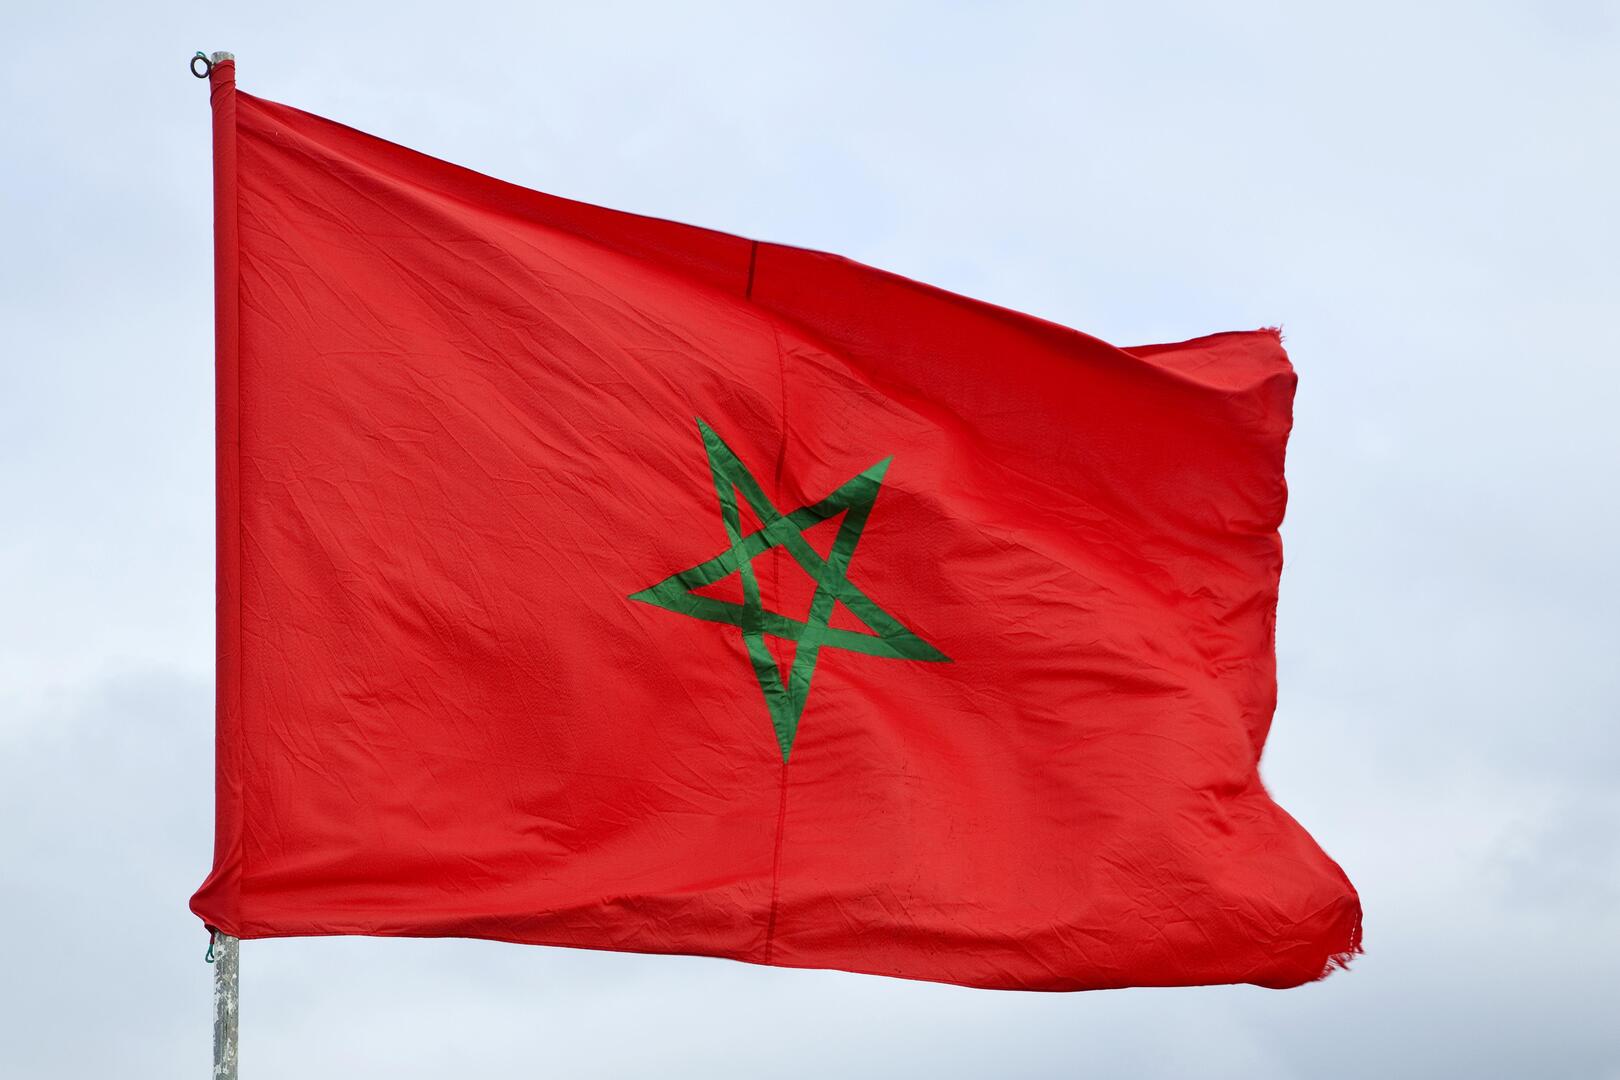 المغرب يشيد بتمديد ولاية بعثة الأمم المتحدة في الصحراء